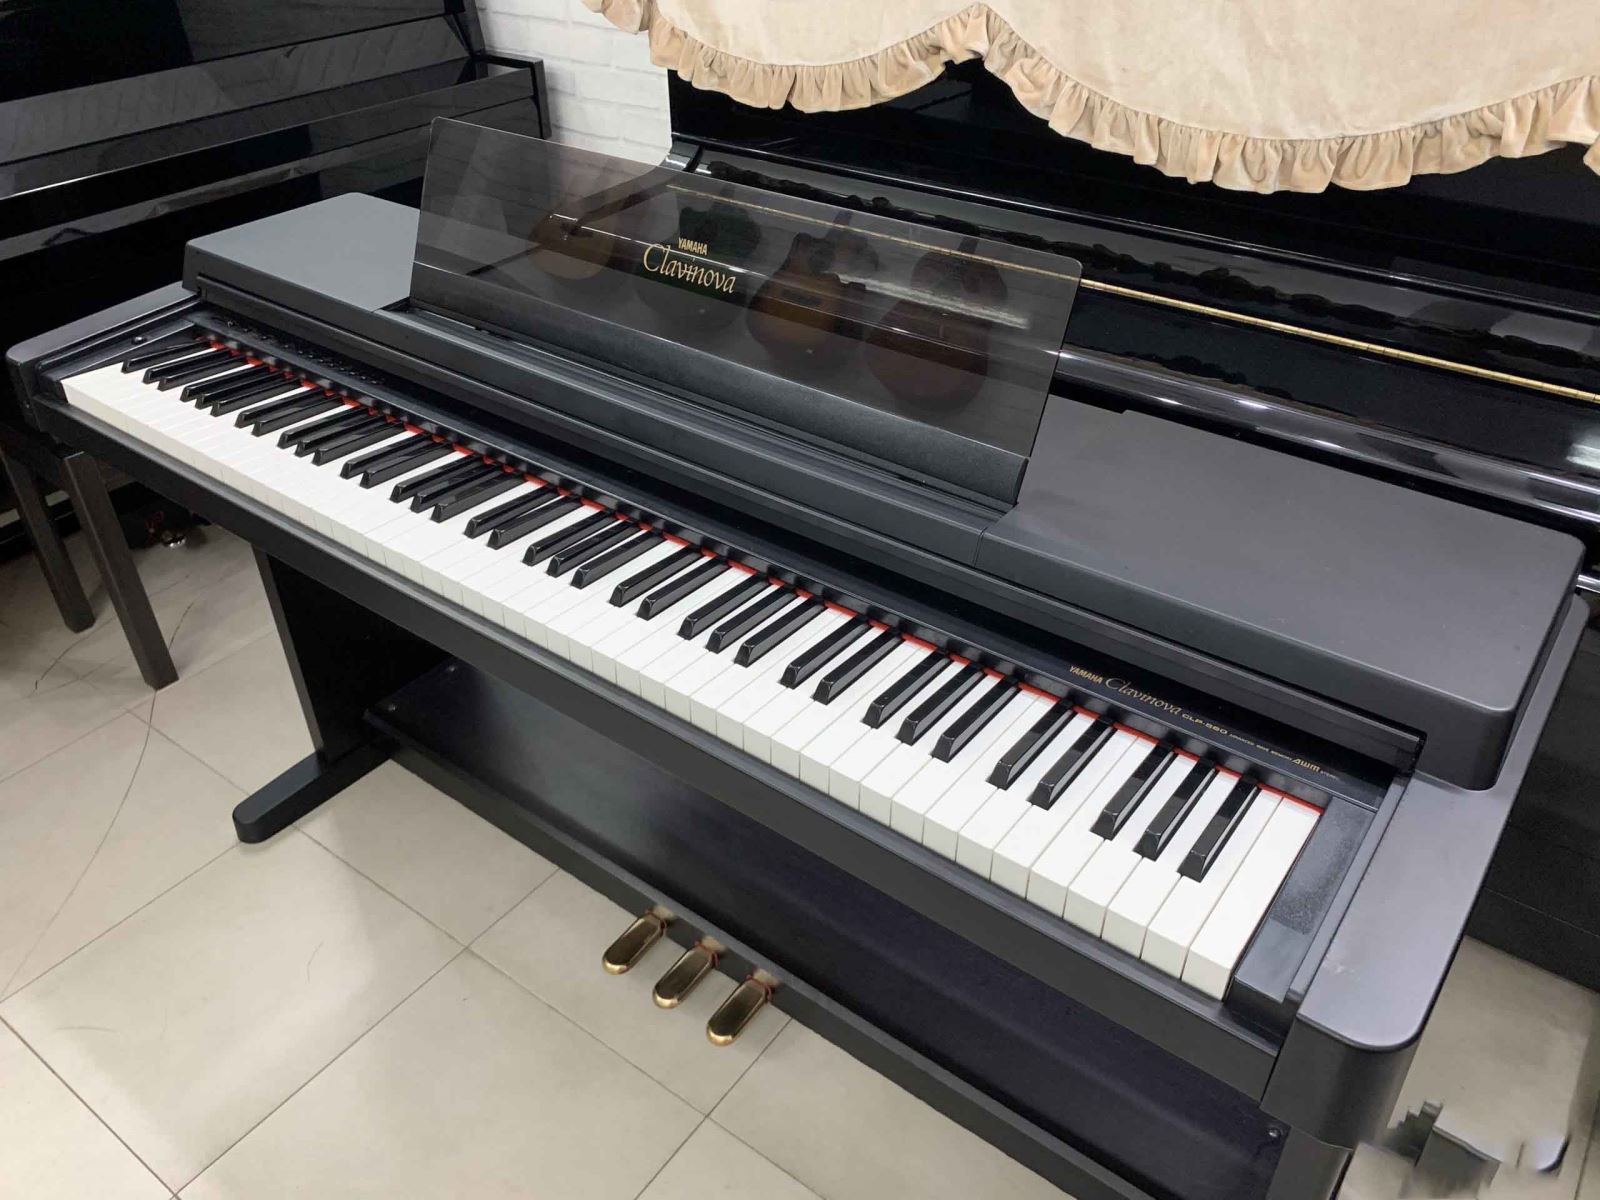 đàn piano điện yamaha clp560 giá rẻ